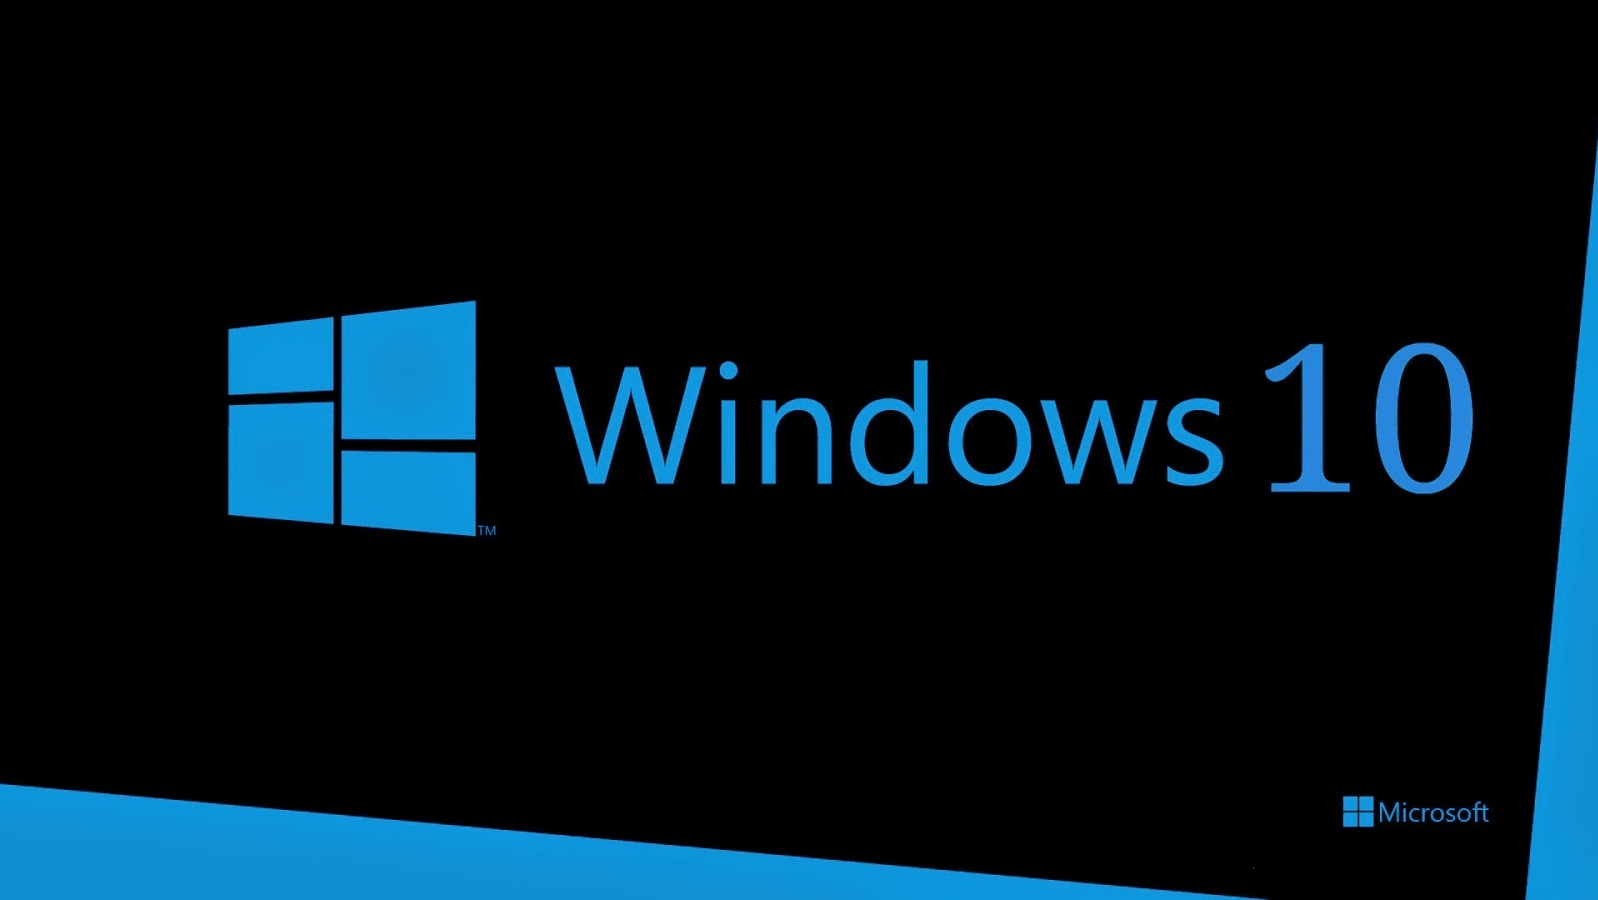 Cкачать Windows 10 с официального сайта Microsoft